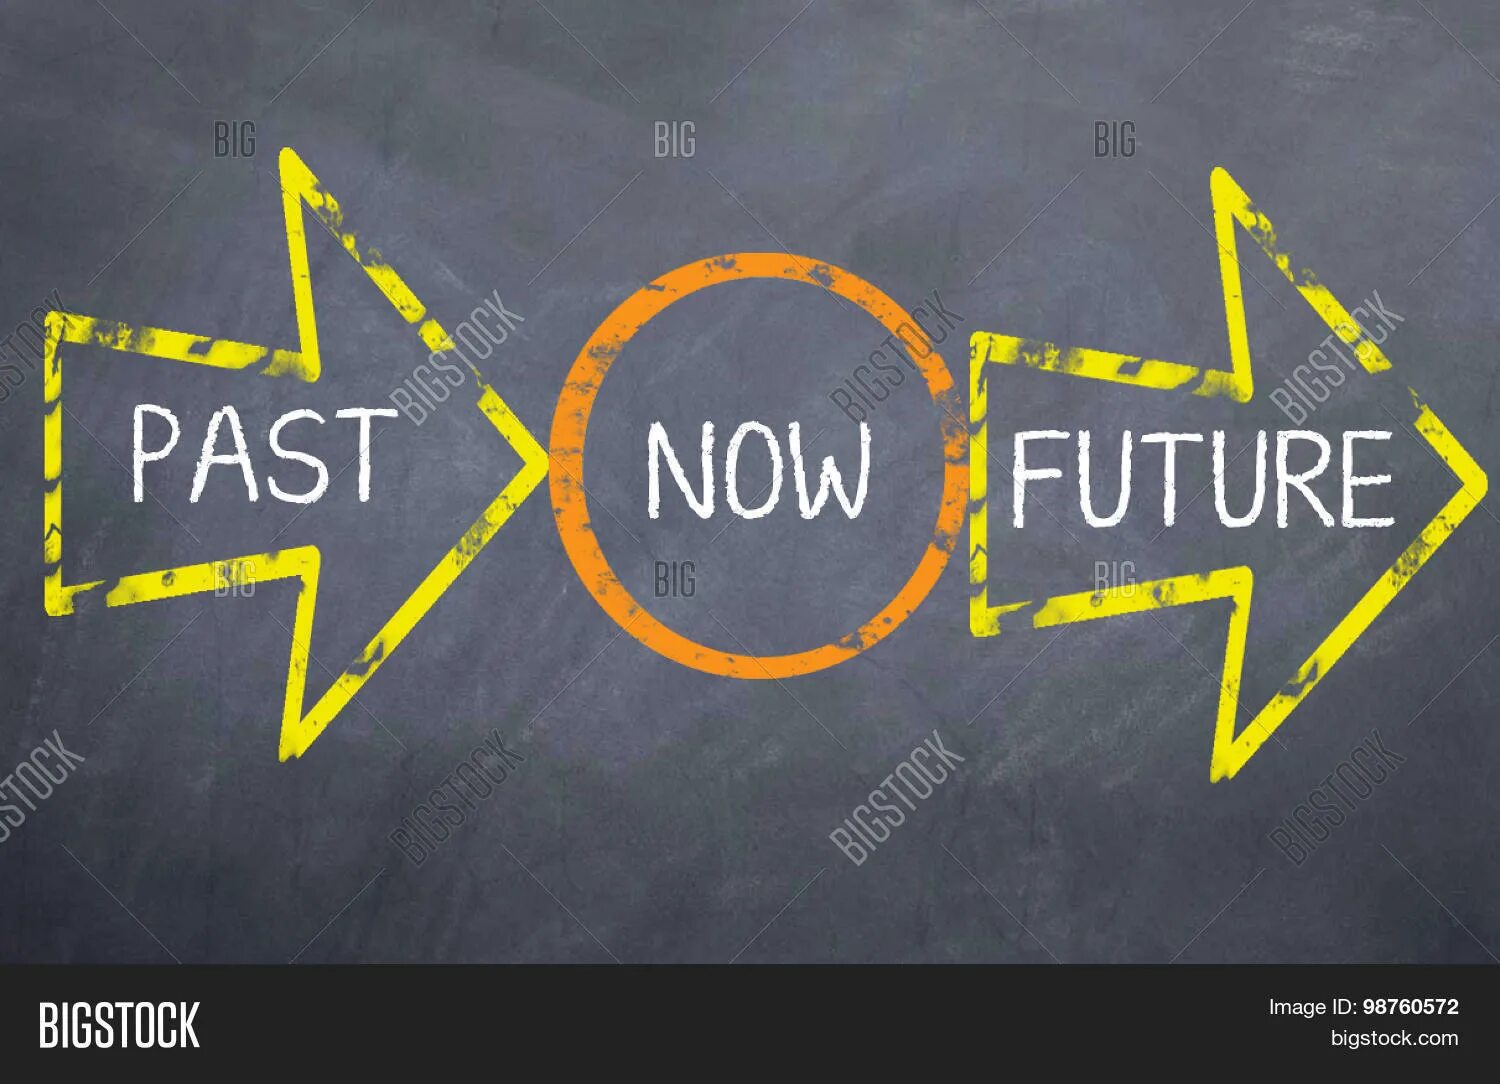 Включи past live. Future Now. Past Now. Future теперь. Past present Future in the Now.